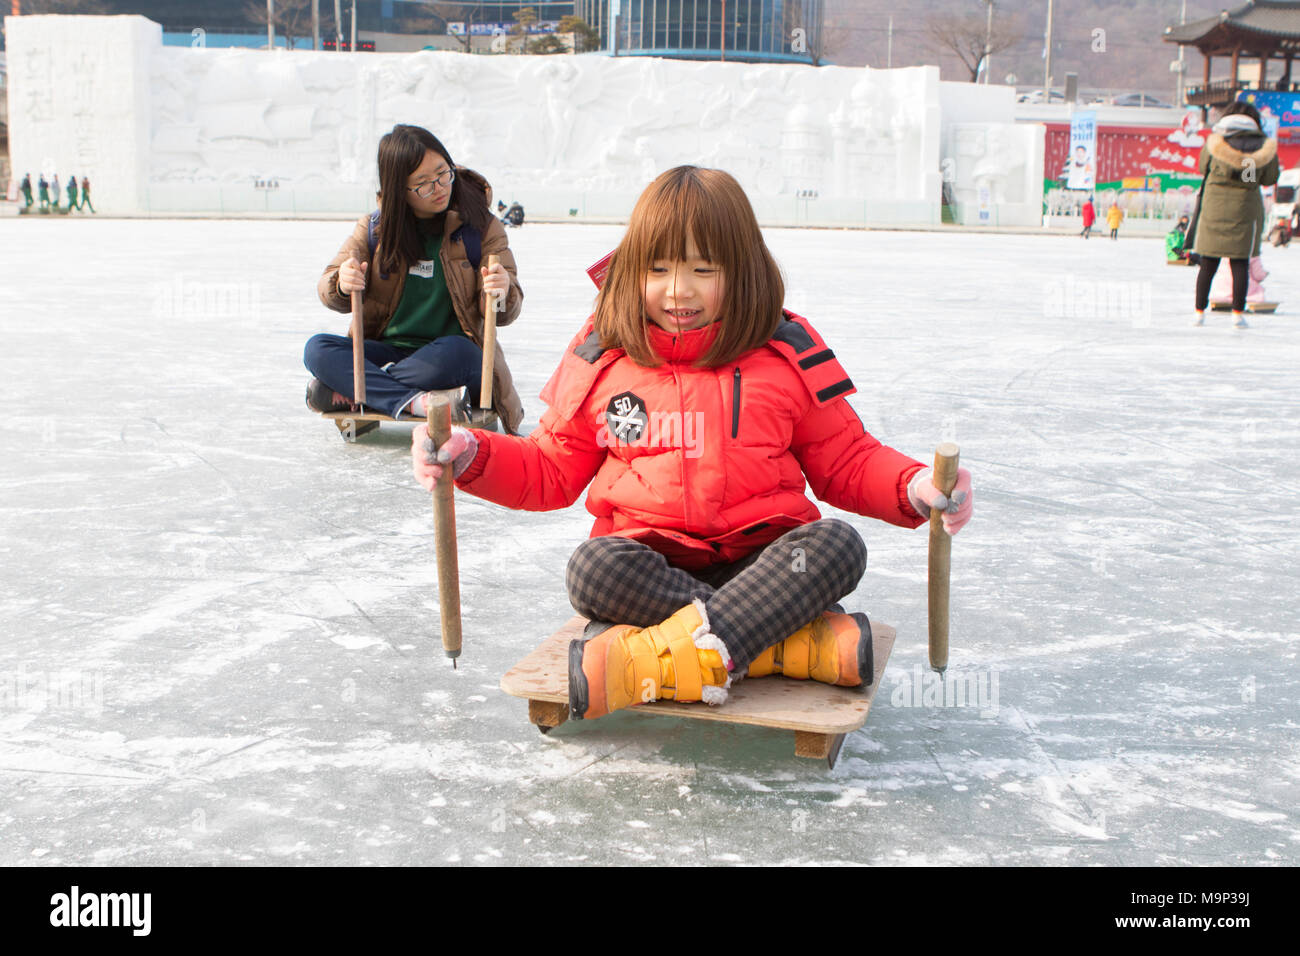 Deux filles le meilleur d'eux-mêmes de l'avant sur les traîneaux à l'Hwacheon Sancheoneo Ice Festival. L'Hwacheon Sancheoneo Ice Festival est une tradition pour les coréens. Chaque année en janvier les foules se rassemblent à la rivière gelée pour célébrer le froid et la neige de l'hiver. L'attraction principale est la pêche sur glace. Jeunes et vieux attendent patiemment sur un petit trou dans la glace pour une truite de mordre. Dans des tentes qu'ils peuvent laisser les poissons grillés après qu'ils soient mangés. Parmi les autres activités sont la luge et le patinage sur glace. La proximité de la région de Pyeongchang accueillera les Jeux Olympiques d'hiver en février 2018. Banque D'Images